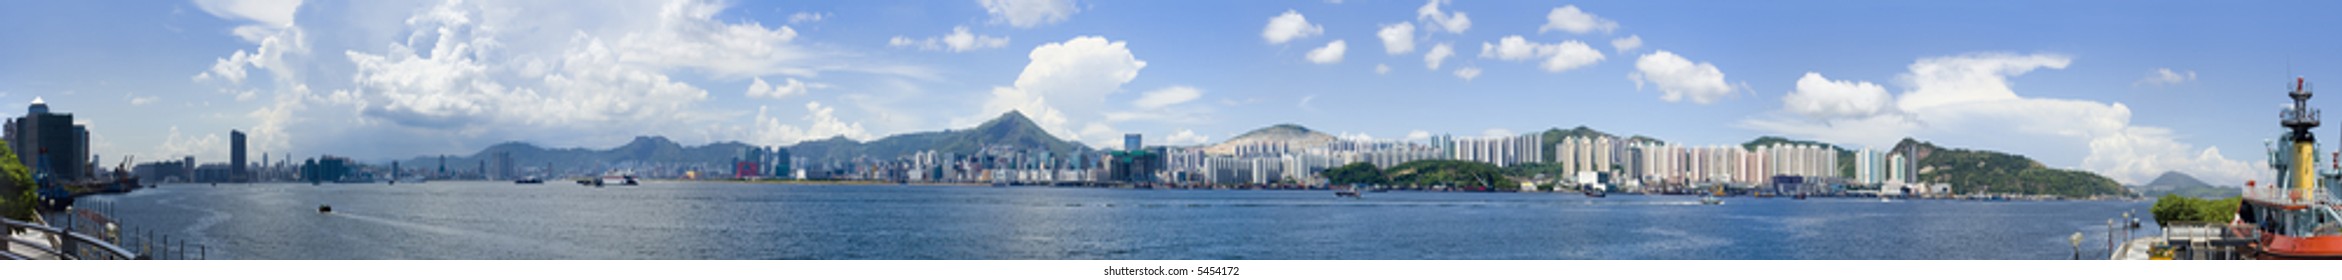 Coast Panoramic At Hong Kong China